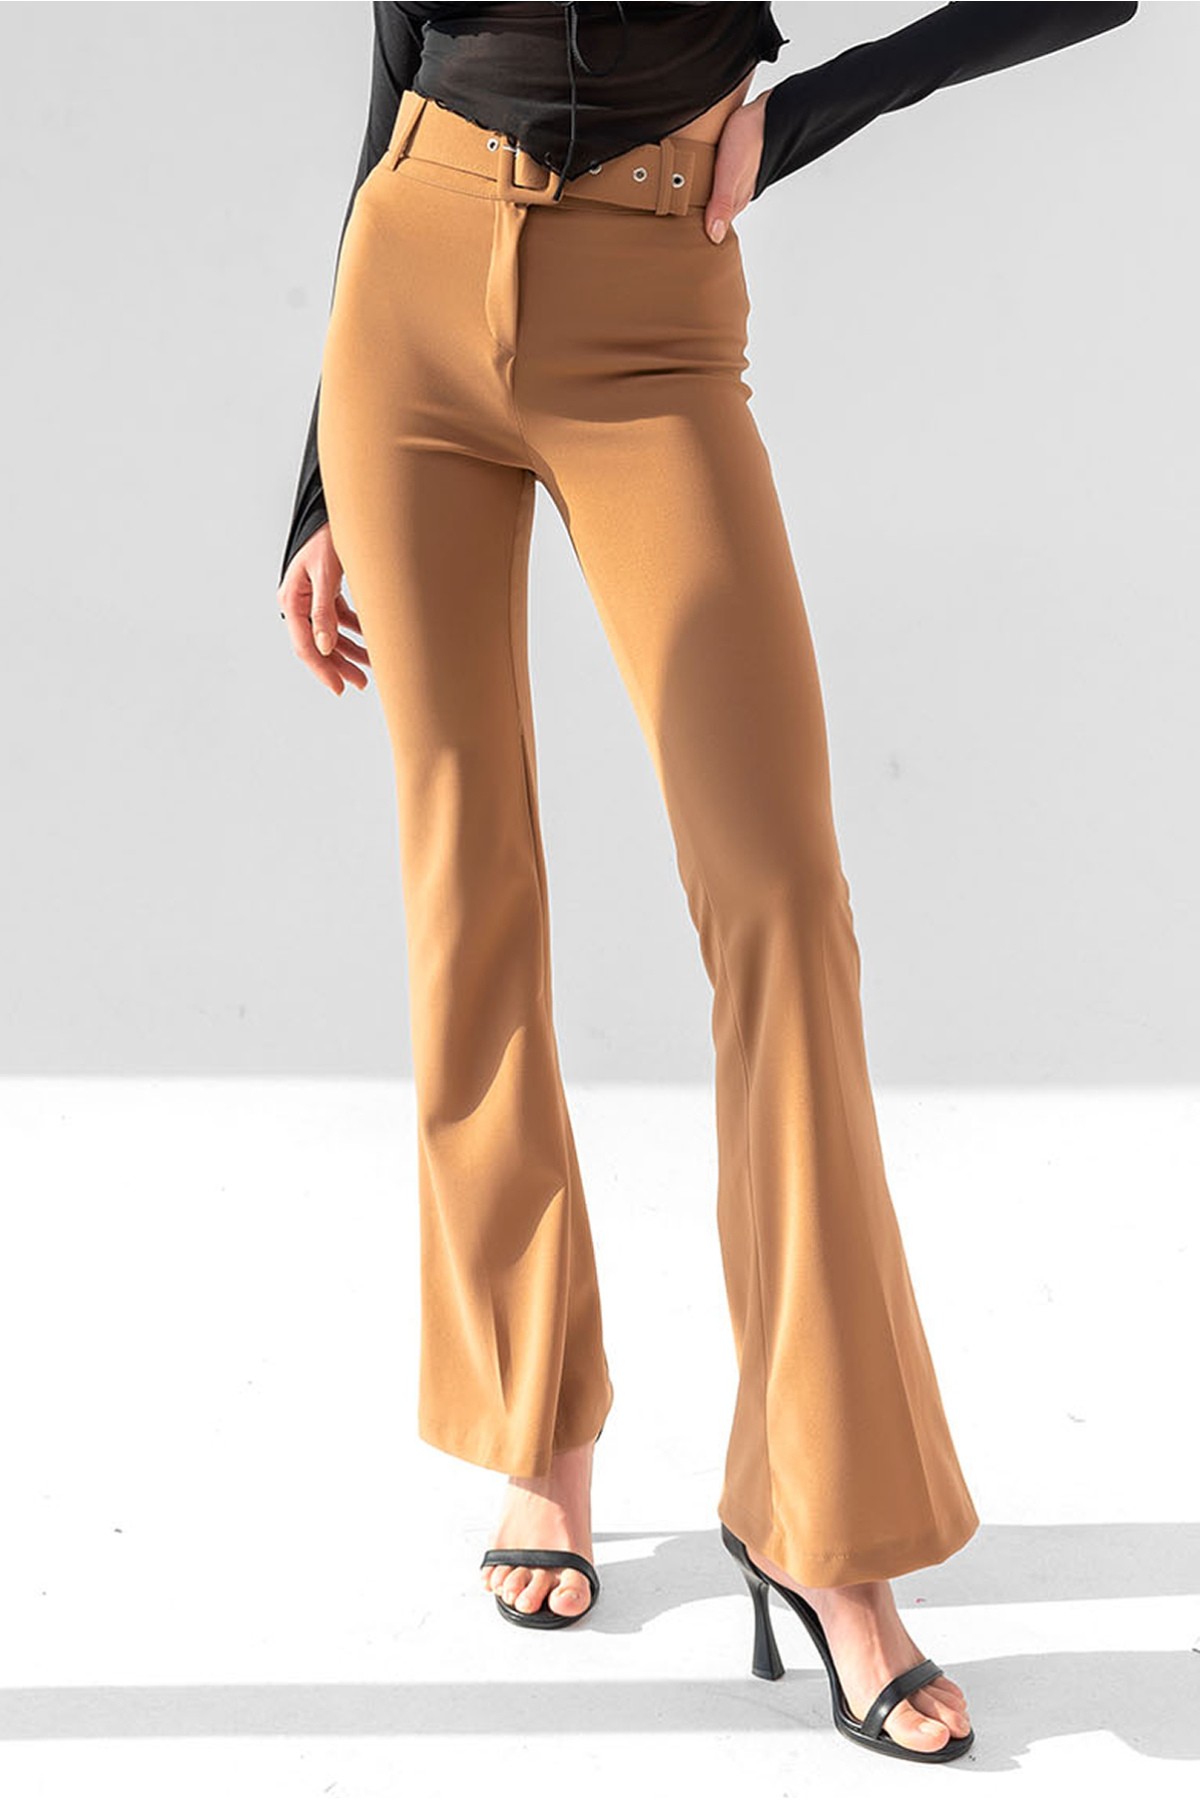 Damen Hose mit hoher Taille und spanischem Schnitt mit Gürtel - Senf